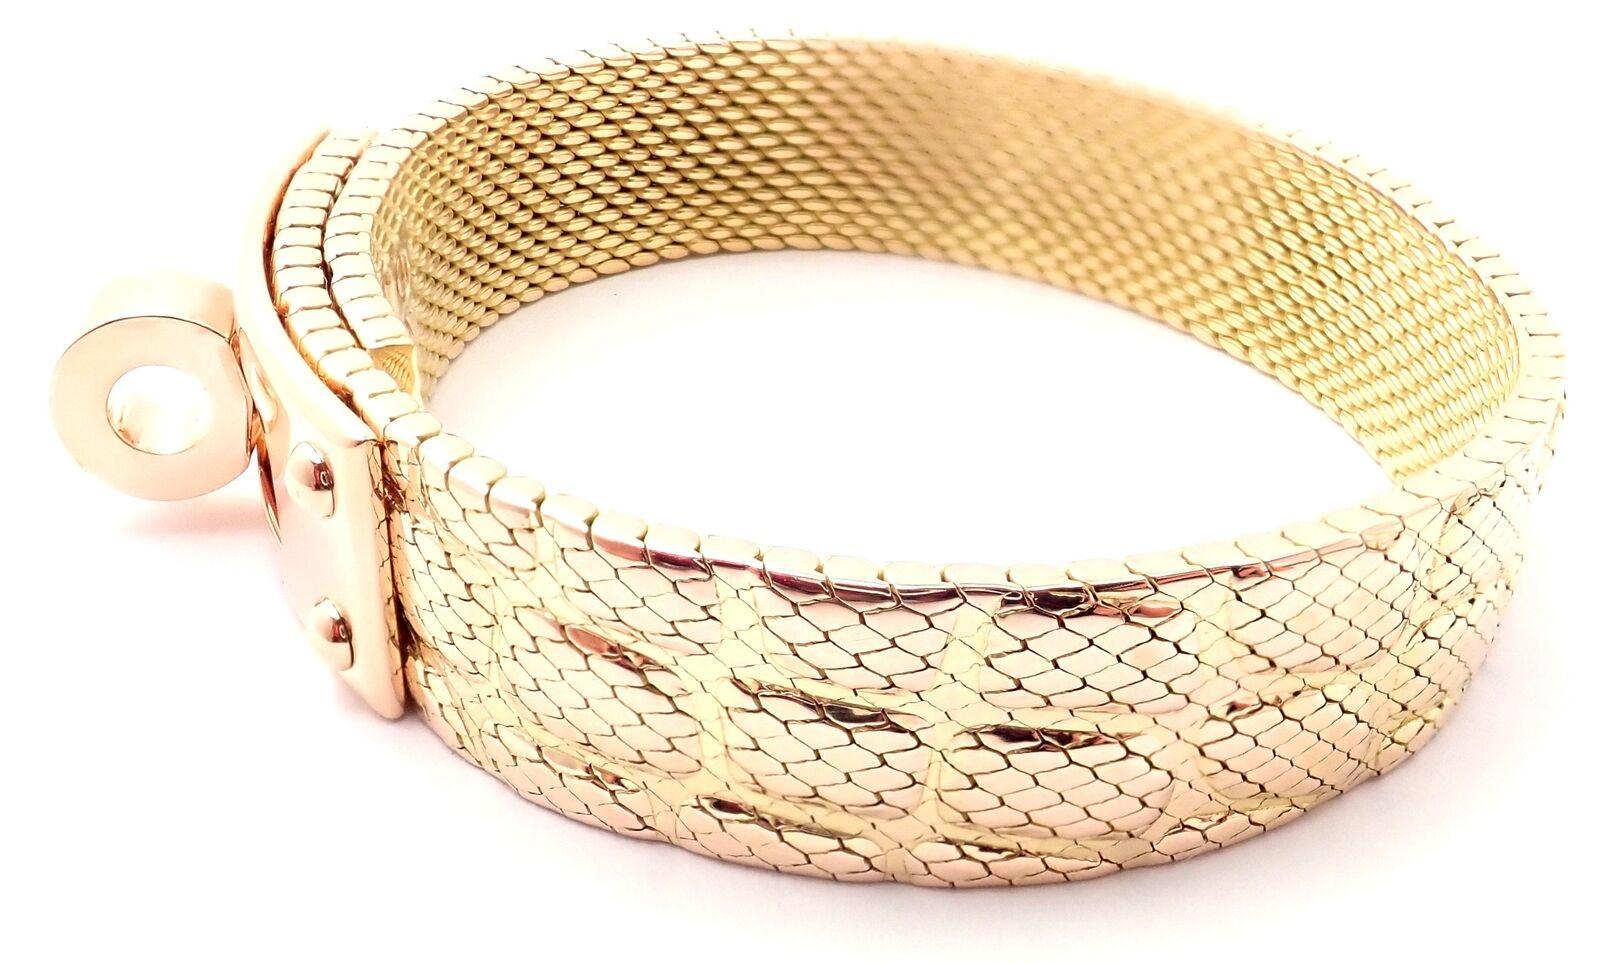 hermes kelly gold bracelet